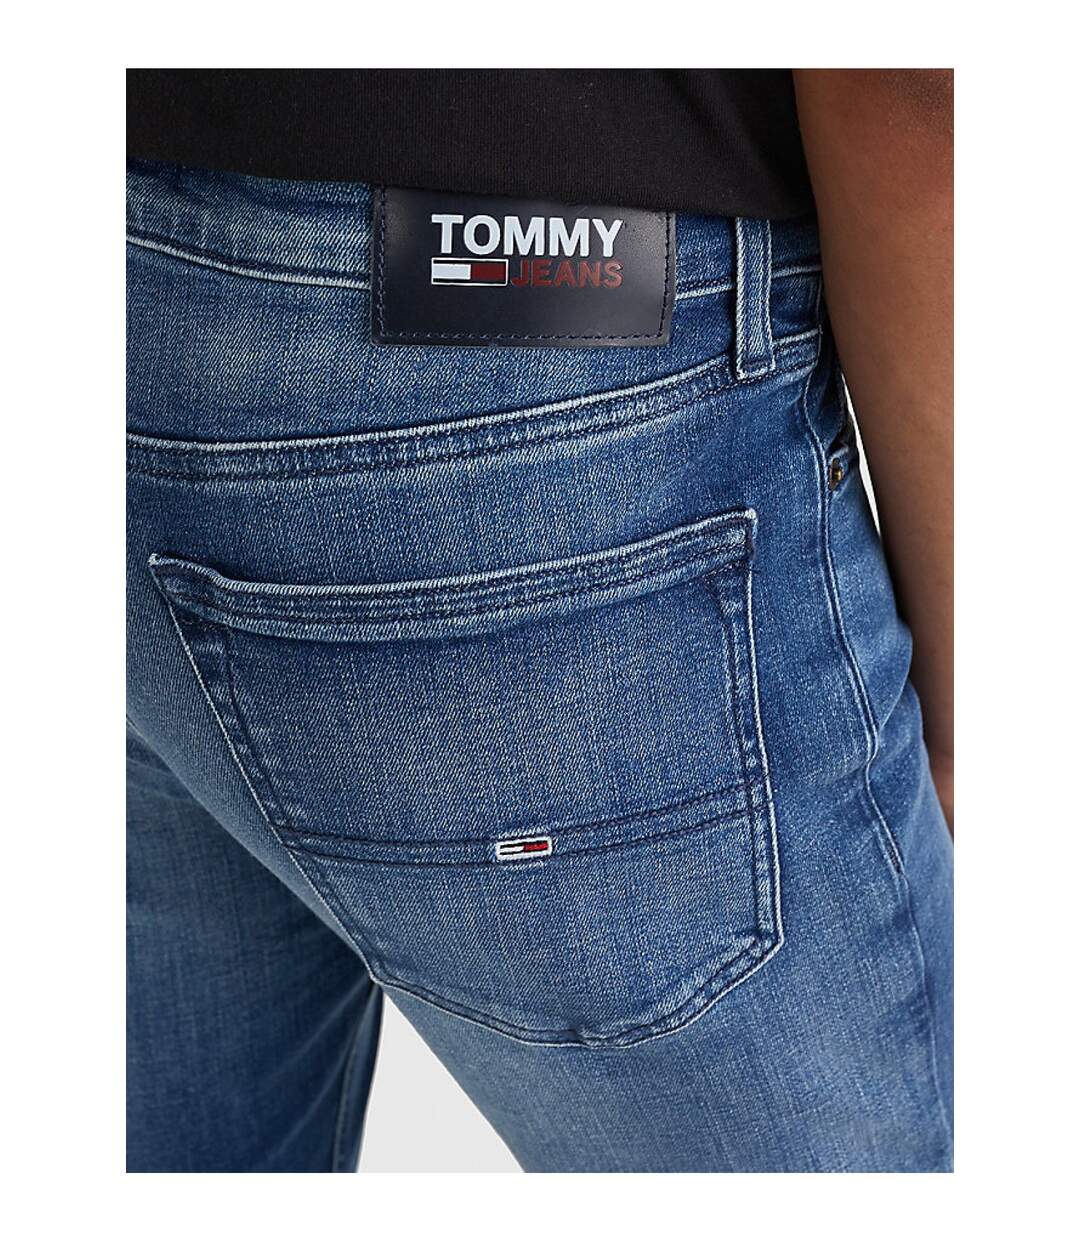 Jean skinny délavé  -  Tommy Jeans - Homme